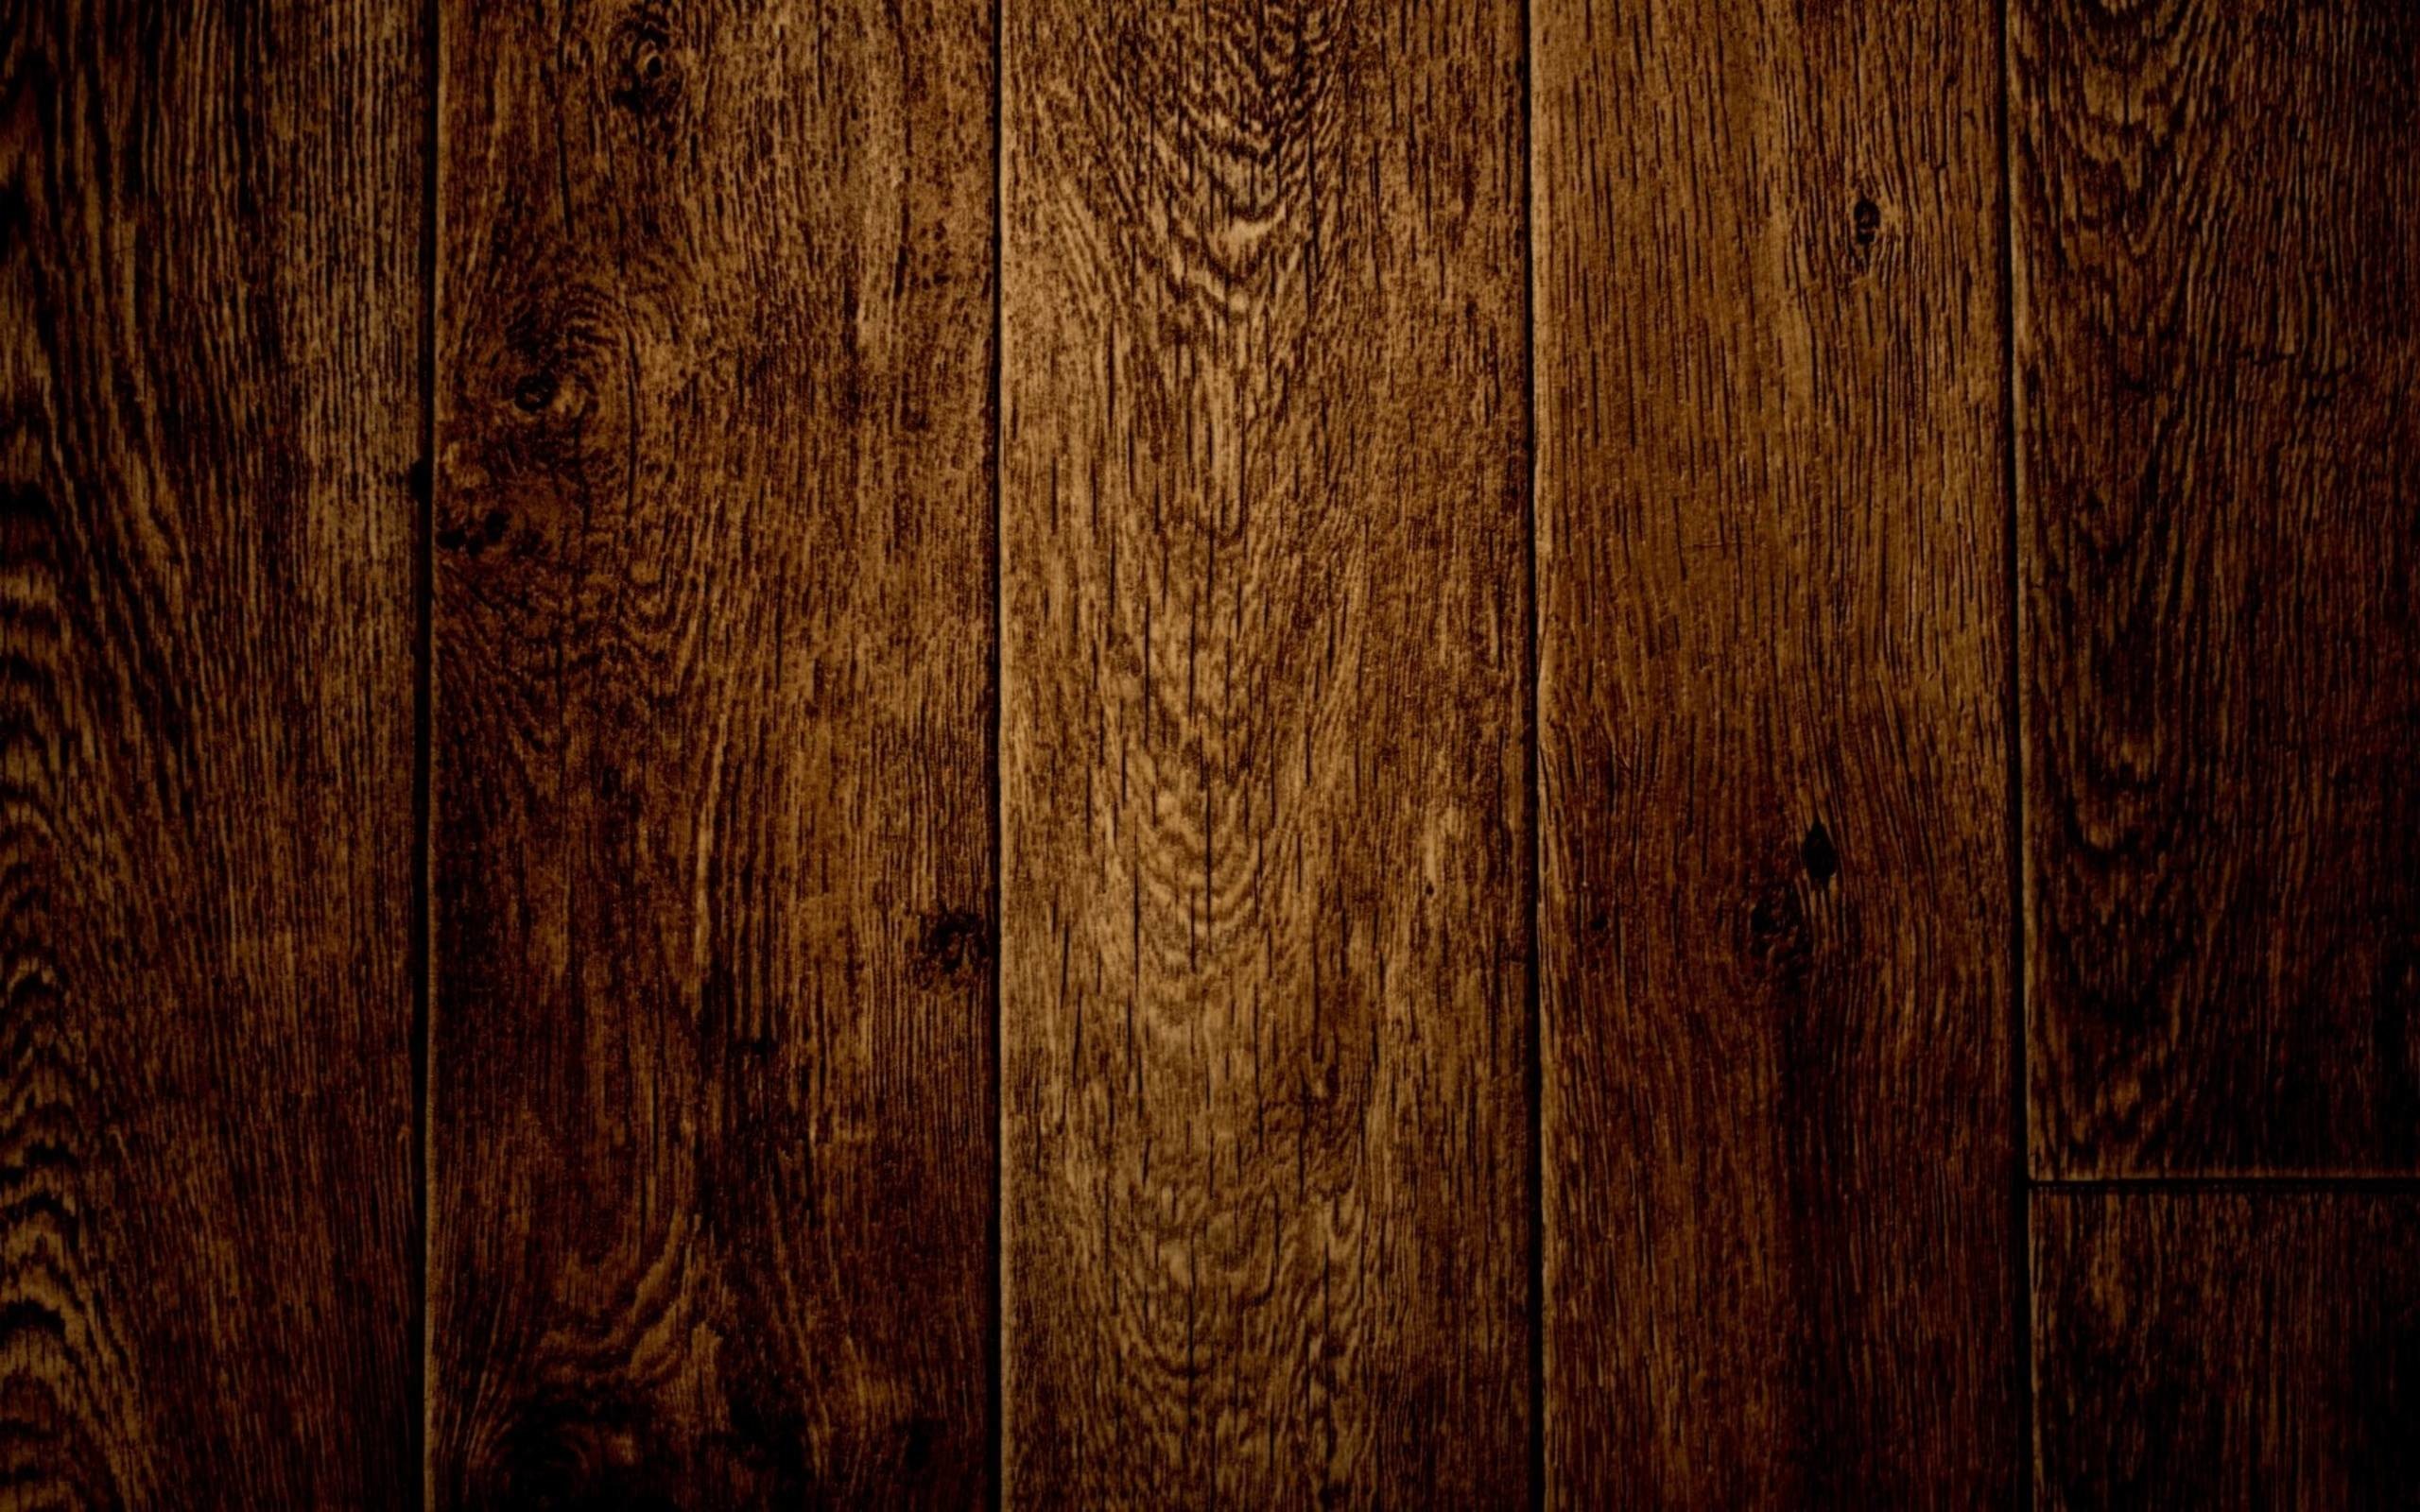 2560x1600 free wood grain wallpapers download | pixelstalk